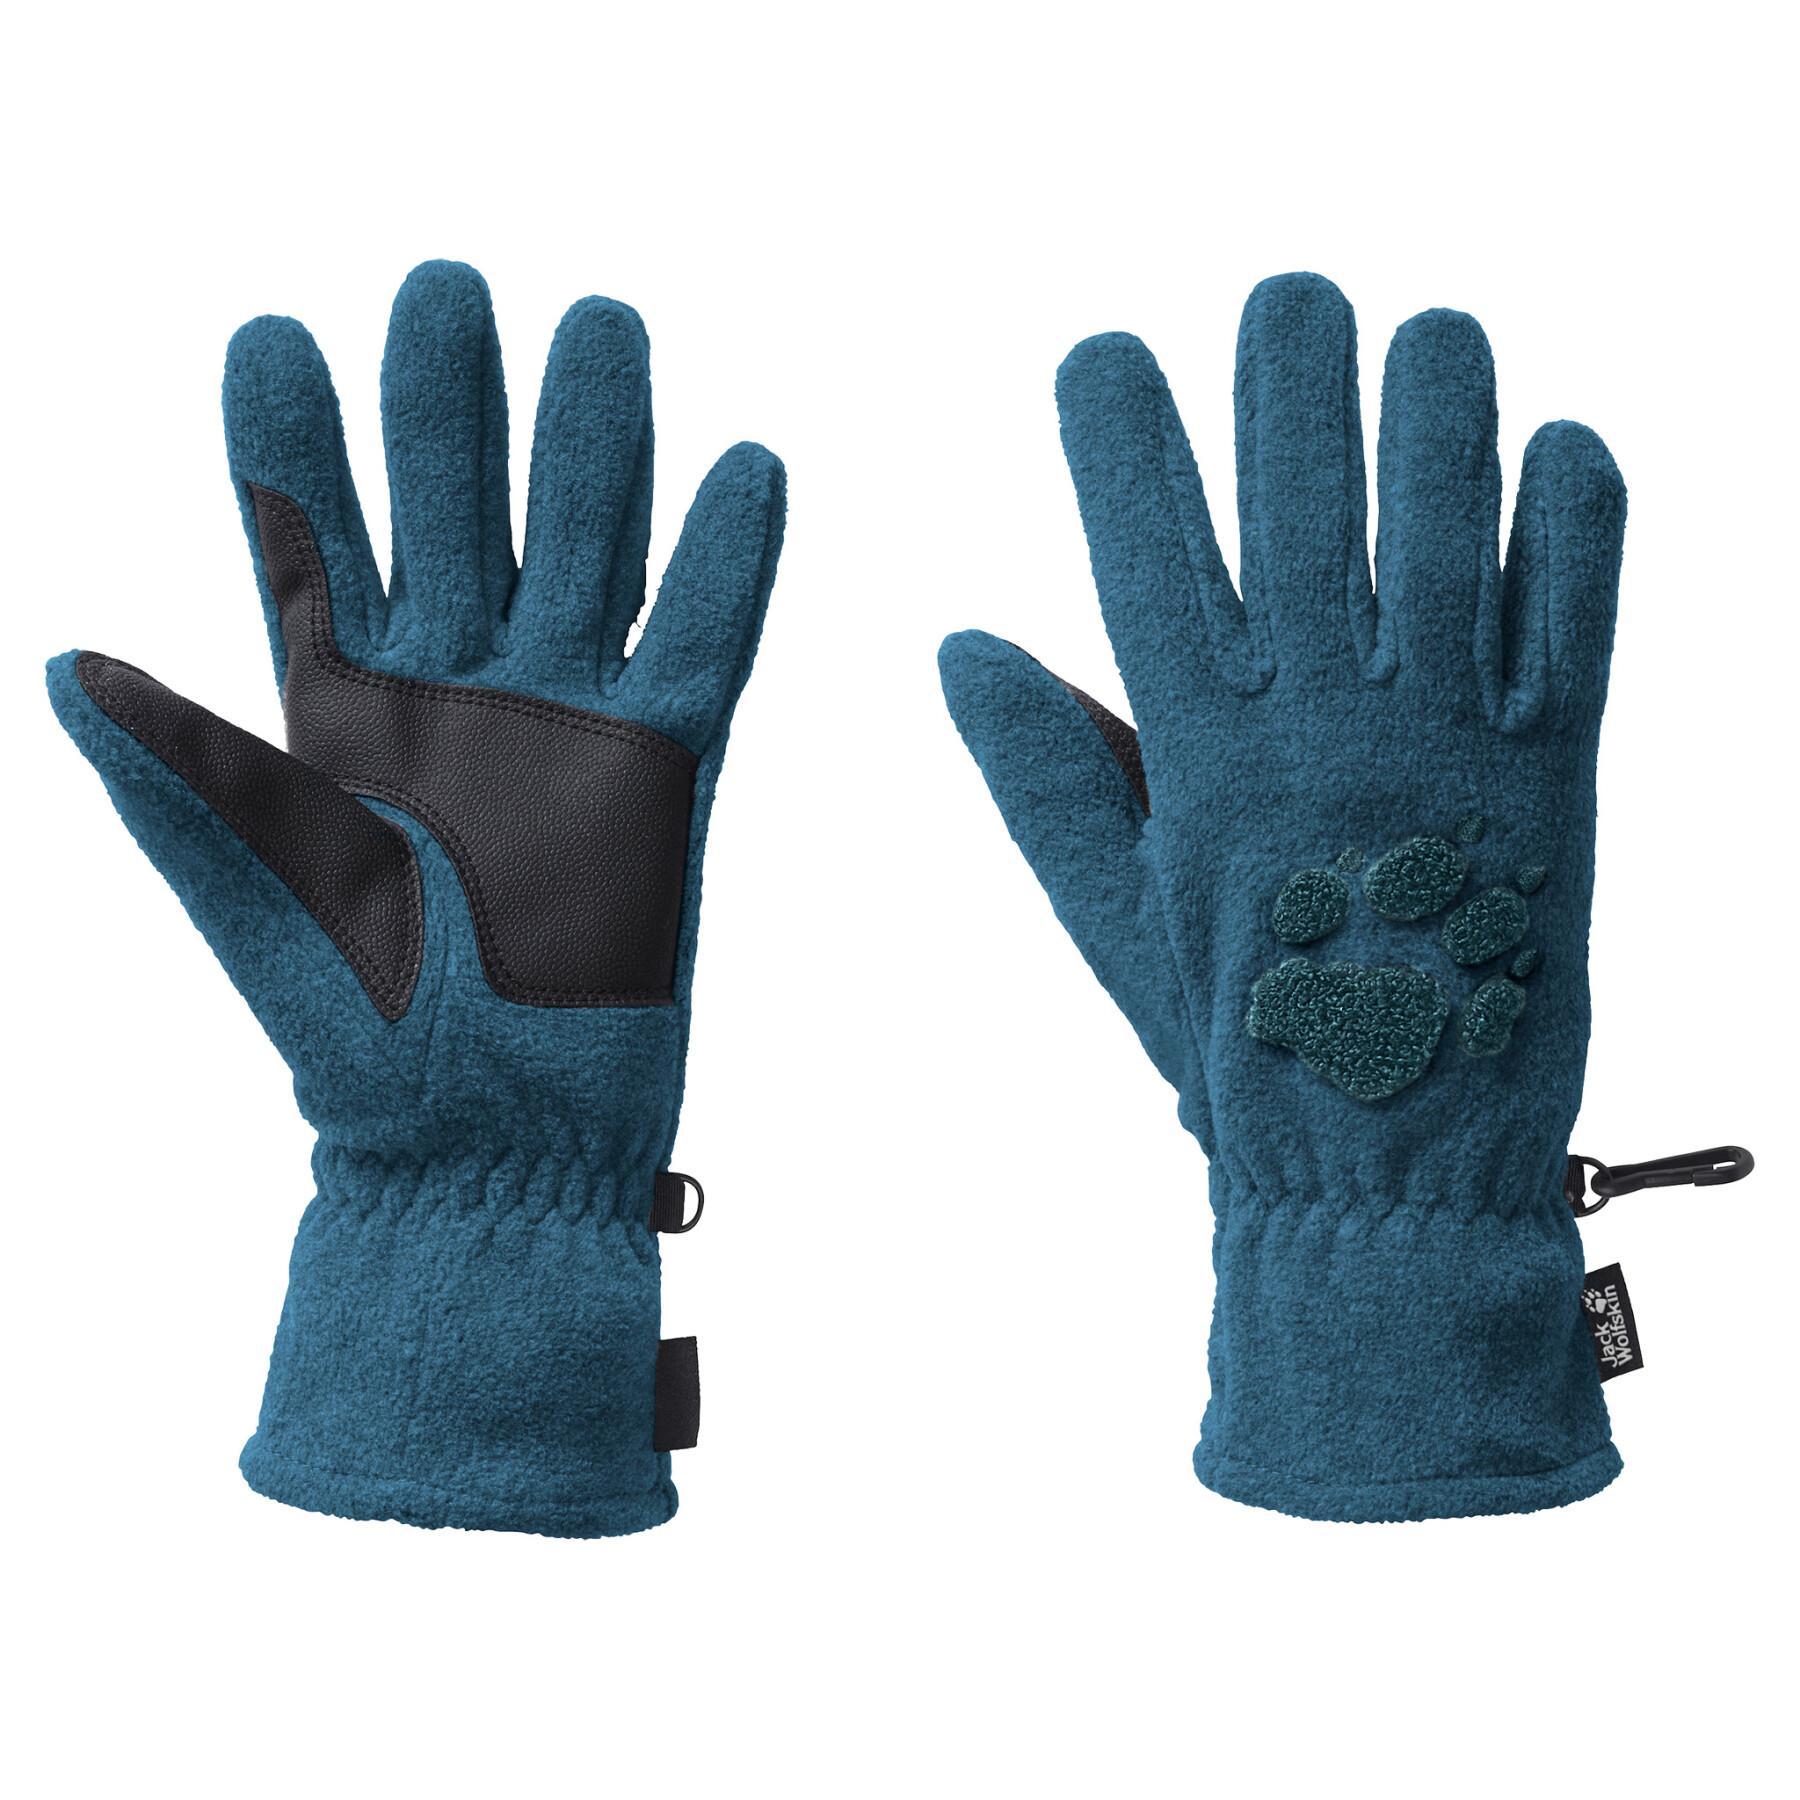 Gloves Jack Wolfskin paw gloves